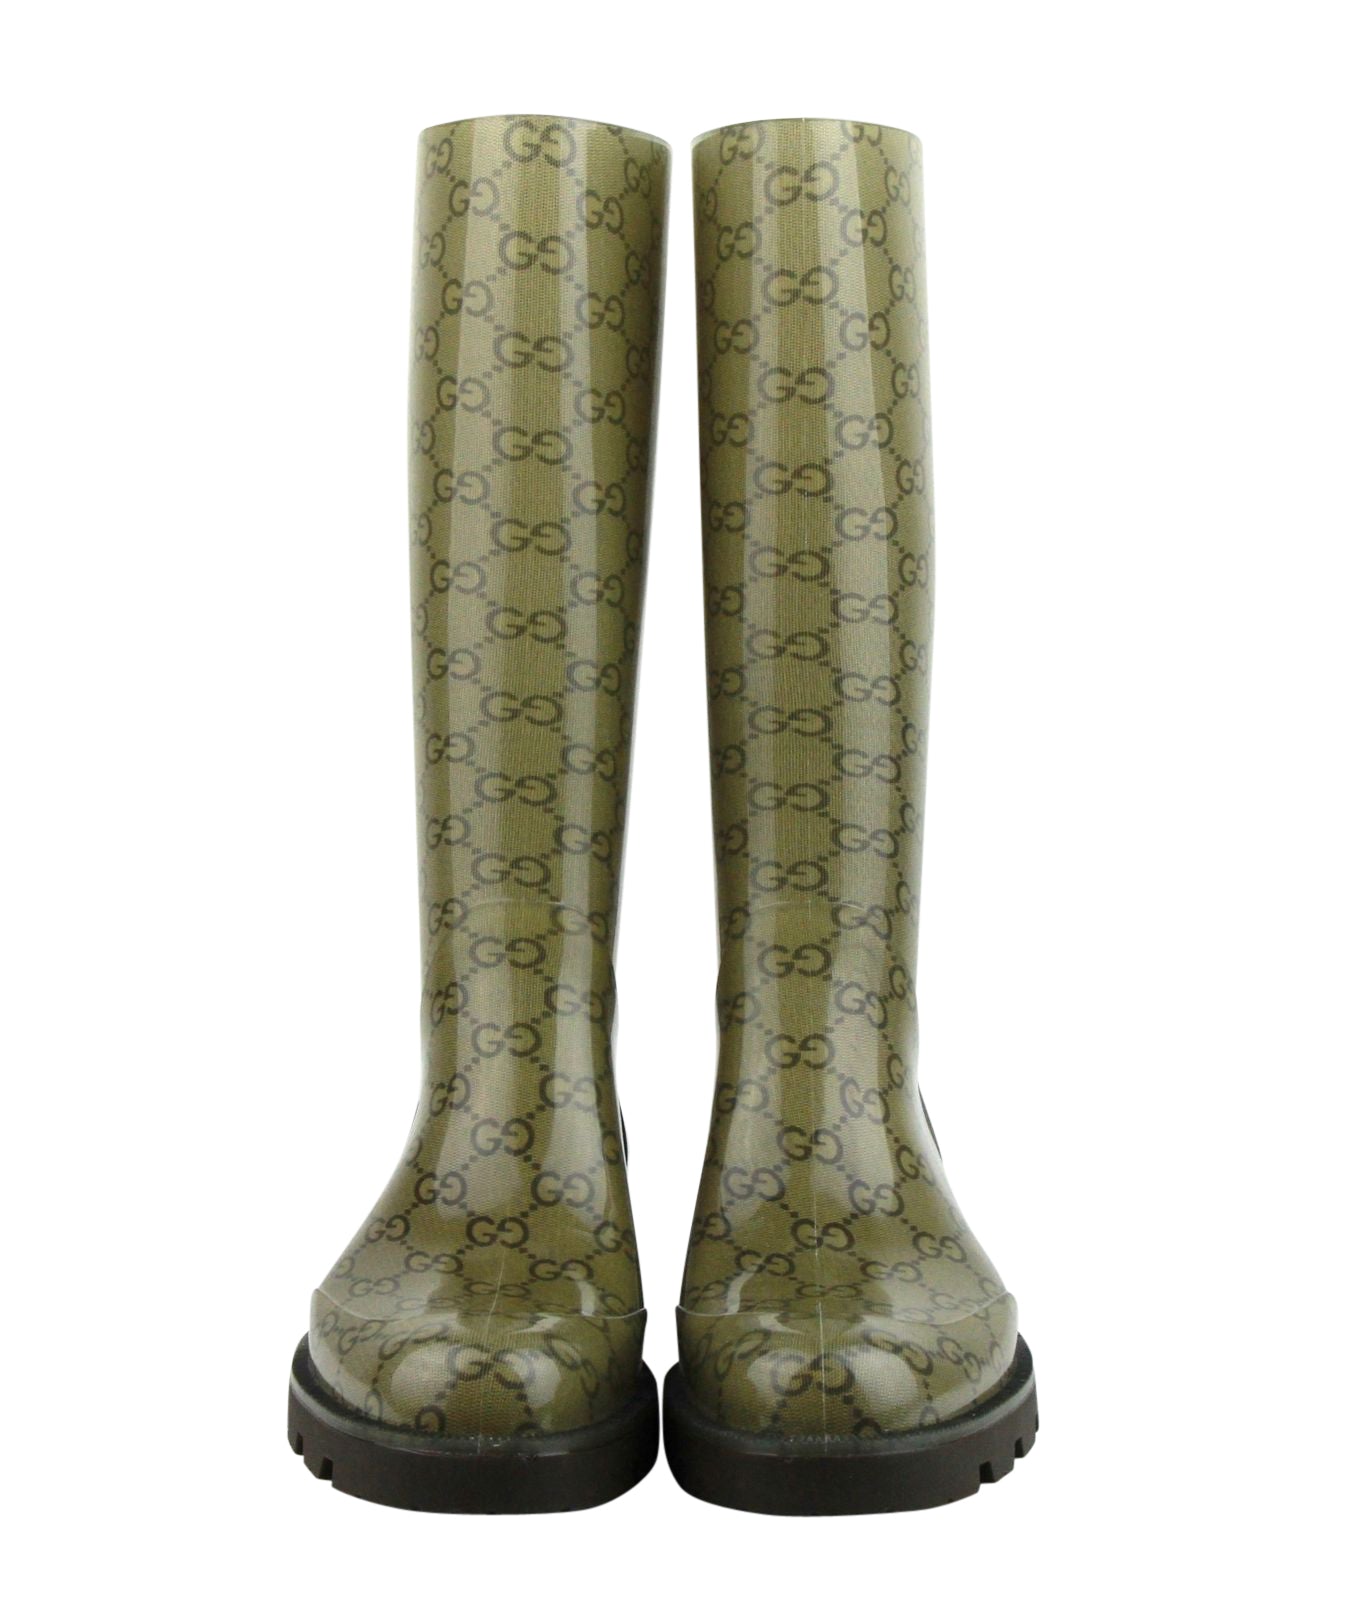 Gucci Edimburg Gg Rain Boots in Brown